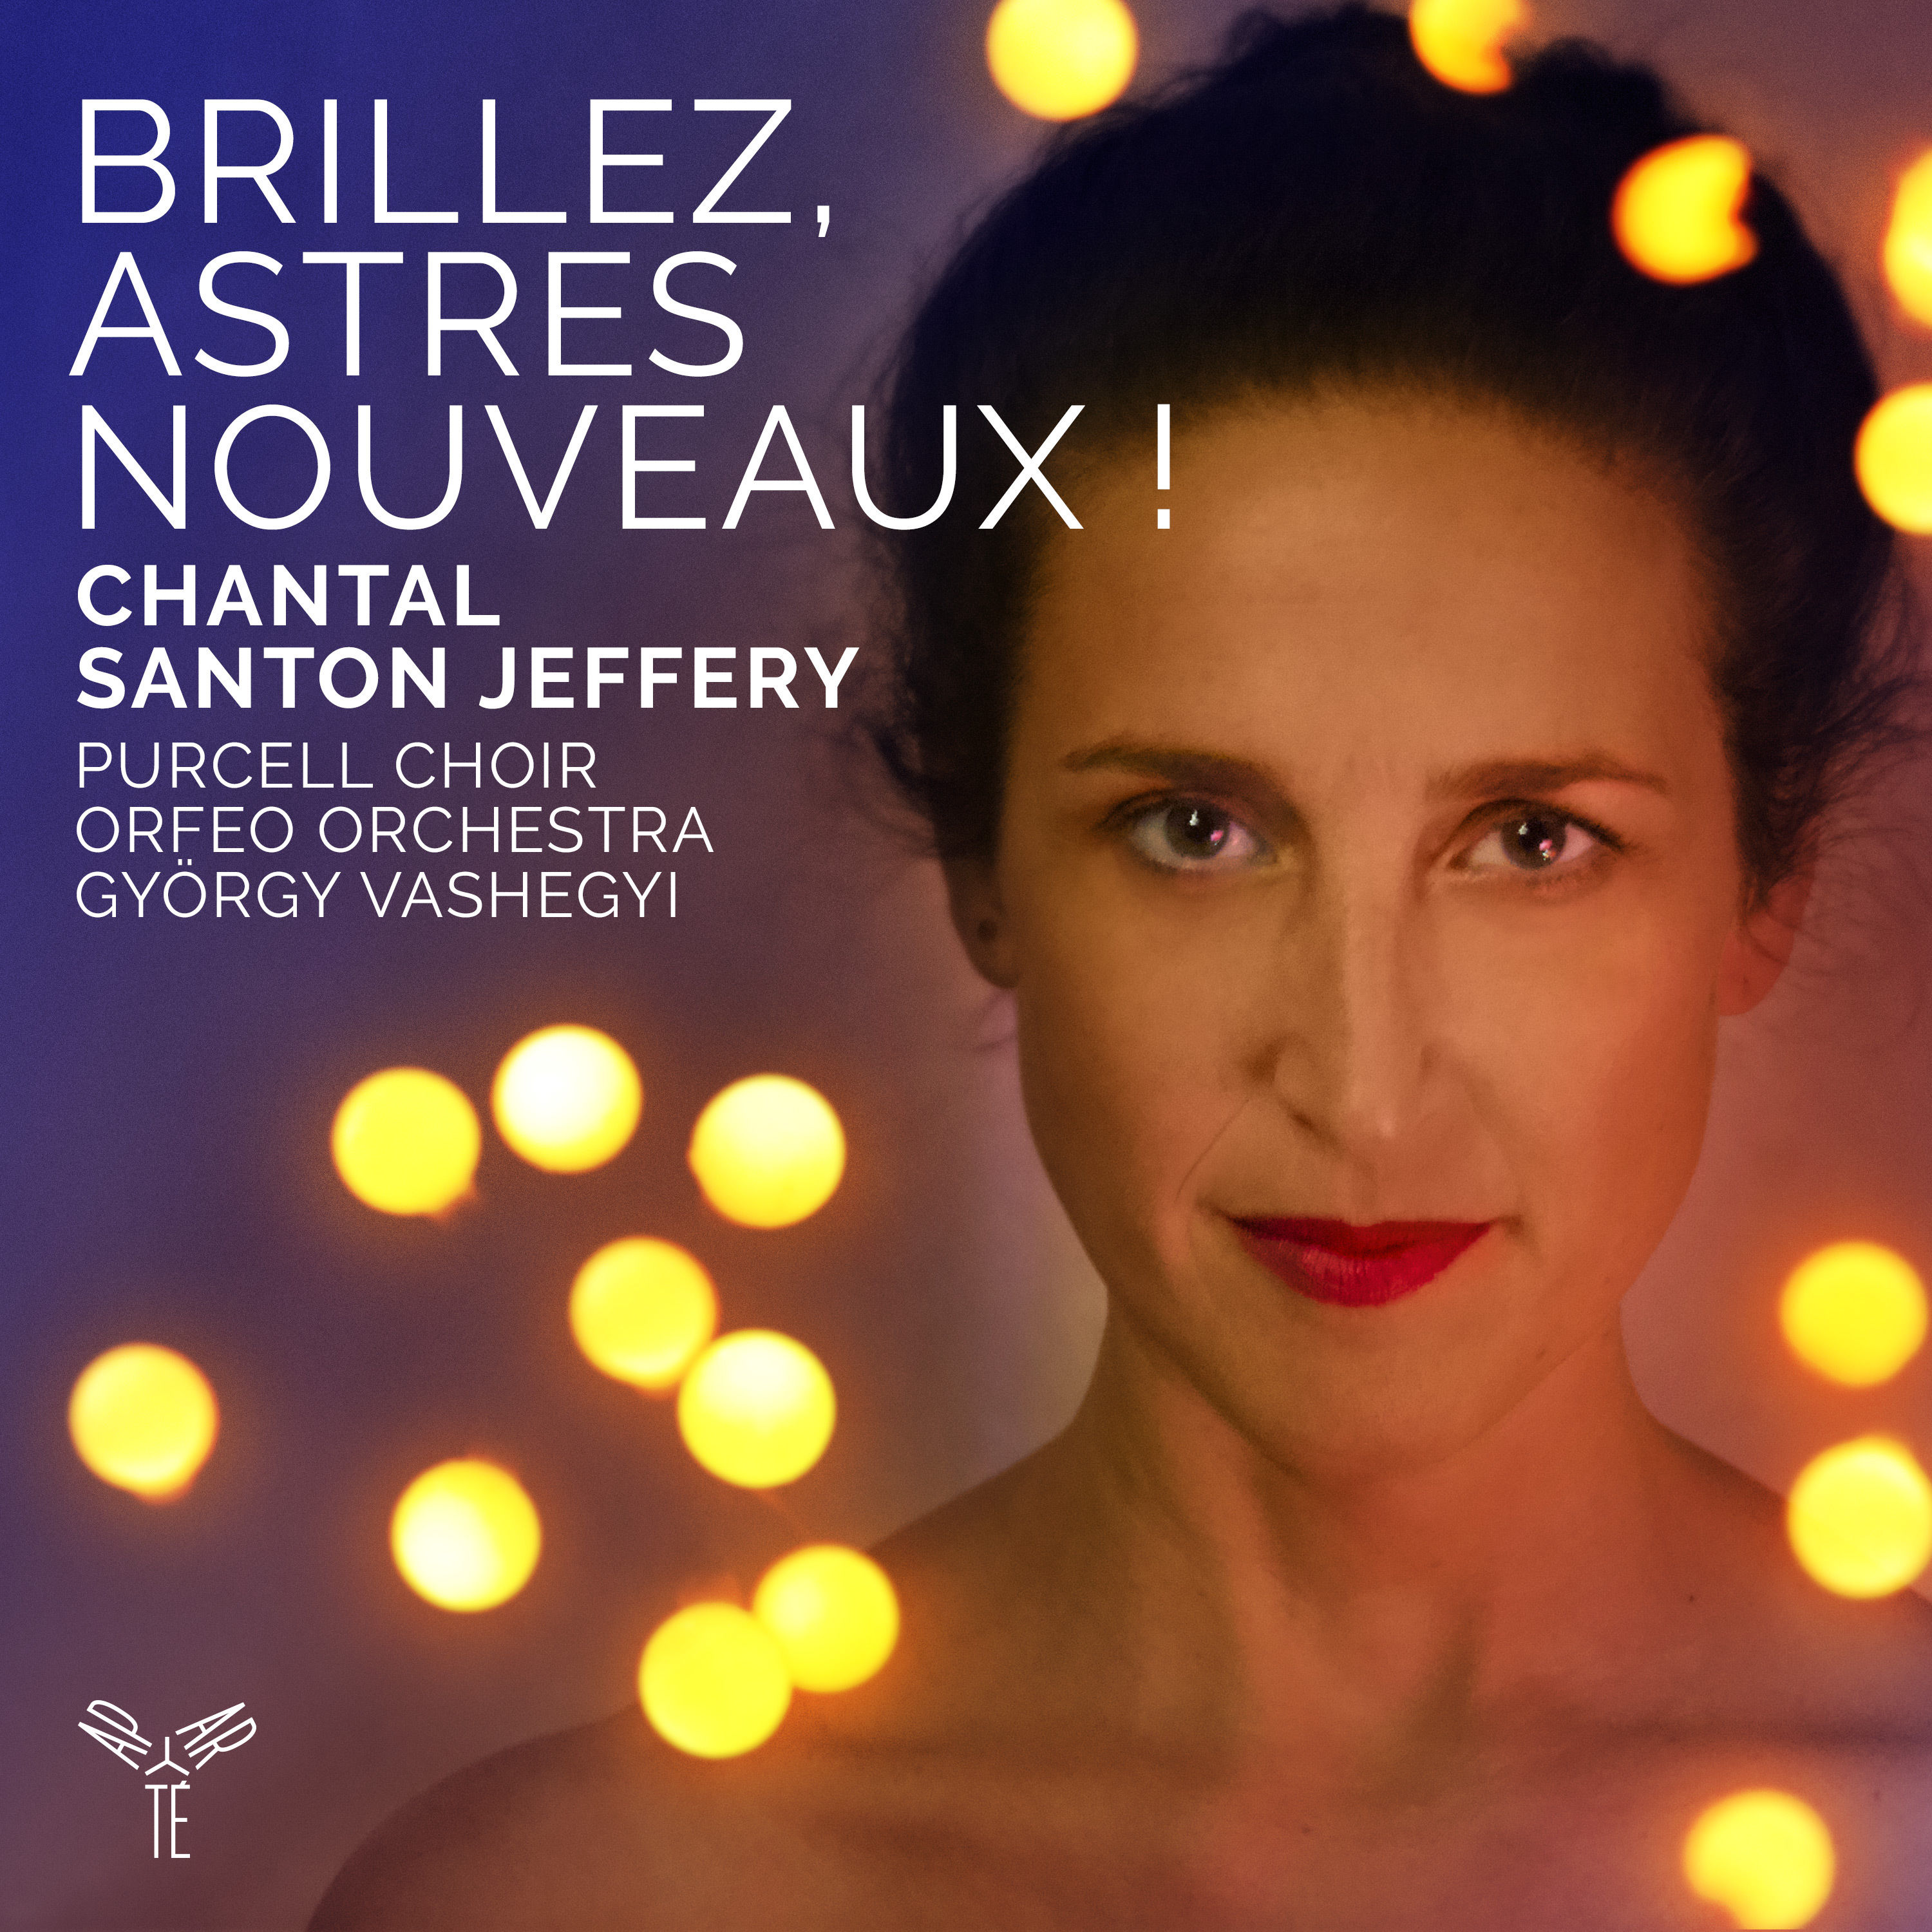 Chantal Santon Jeffery - Brillez, astres nouveaux ! (Airs d’opera baroque francais) (2020) [FLAC 24bit/96kHz]